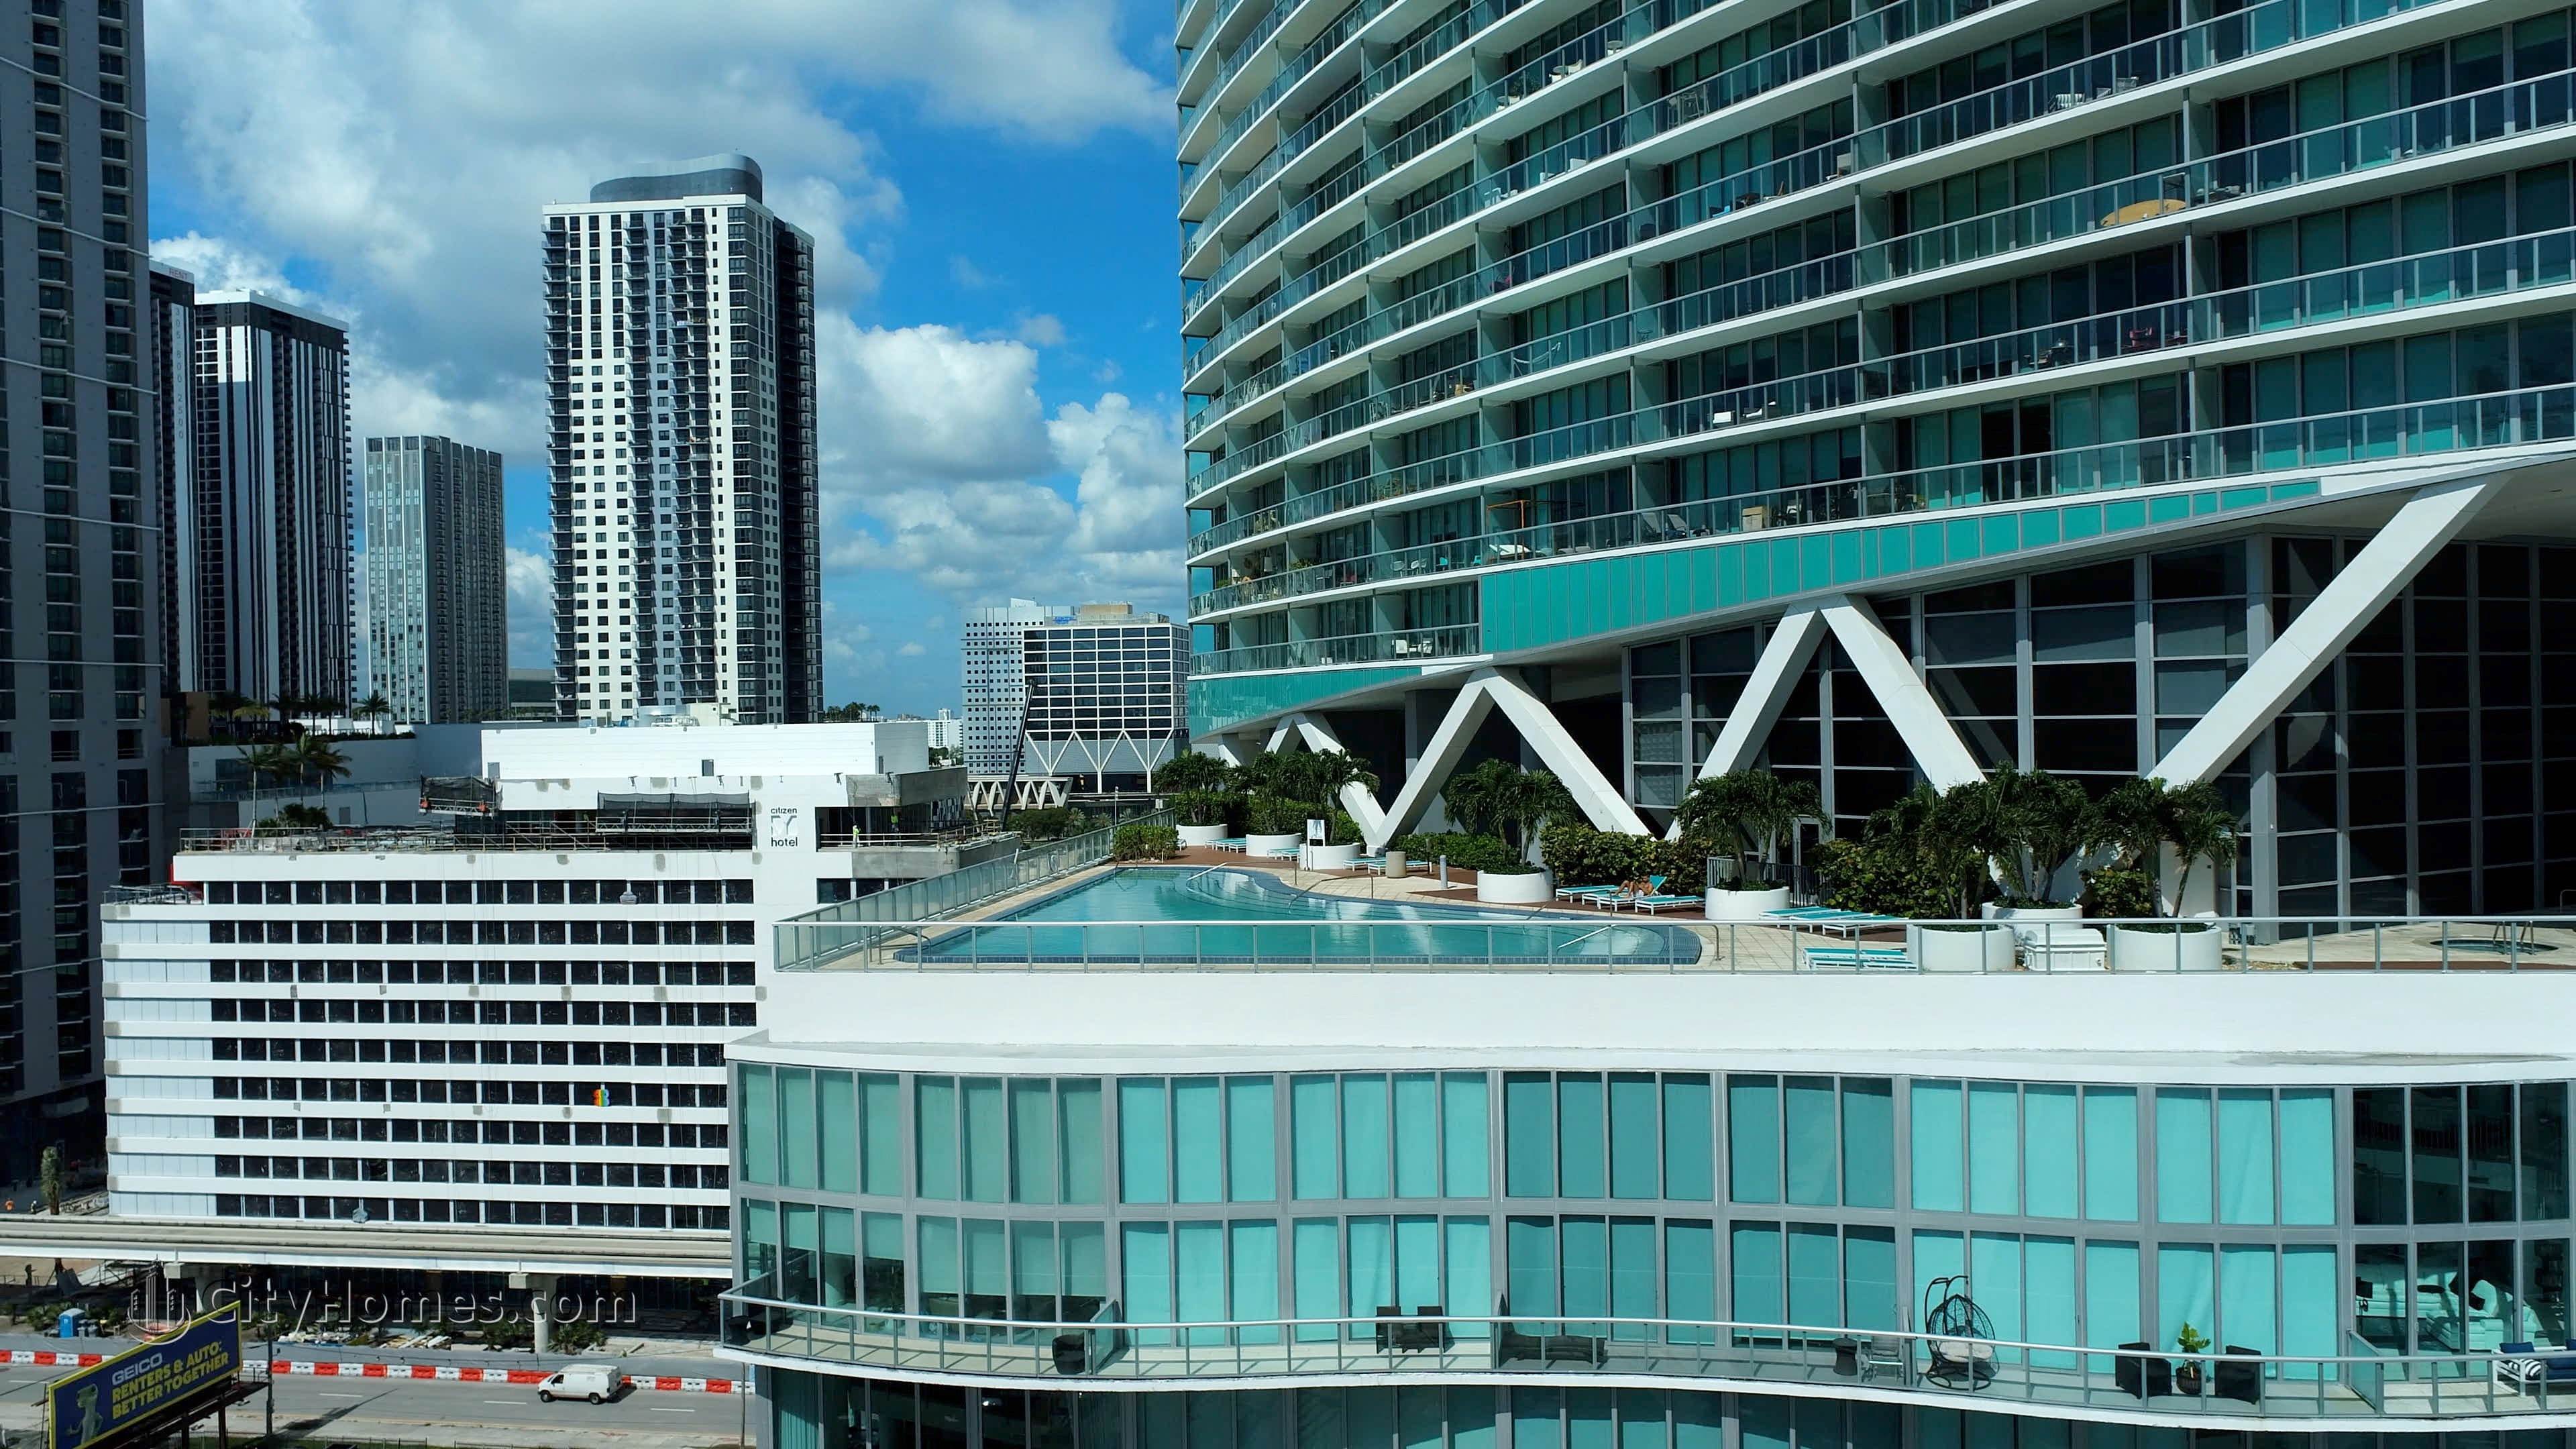 2. Marina Blue edificio a 888 Biscayne Blvd, Miami, FL 33132